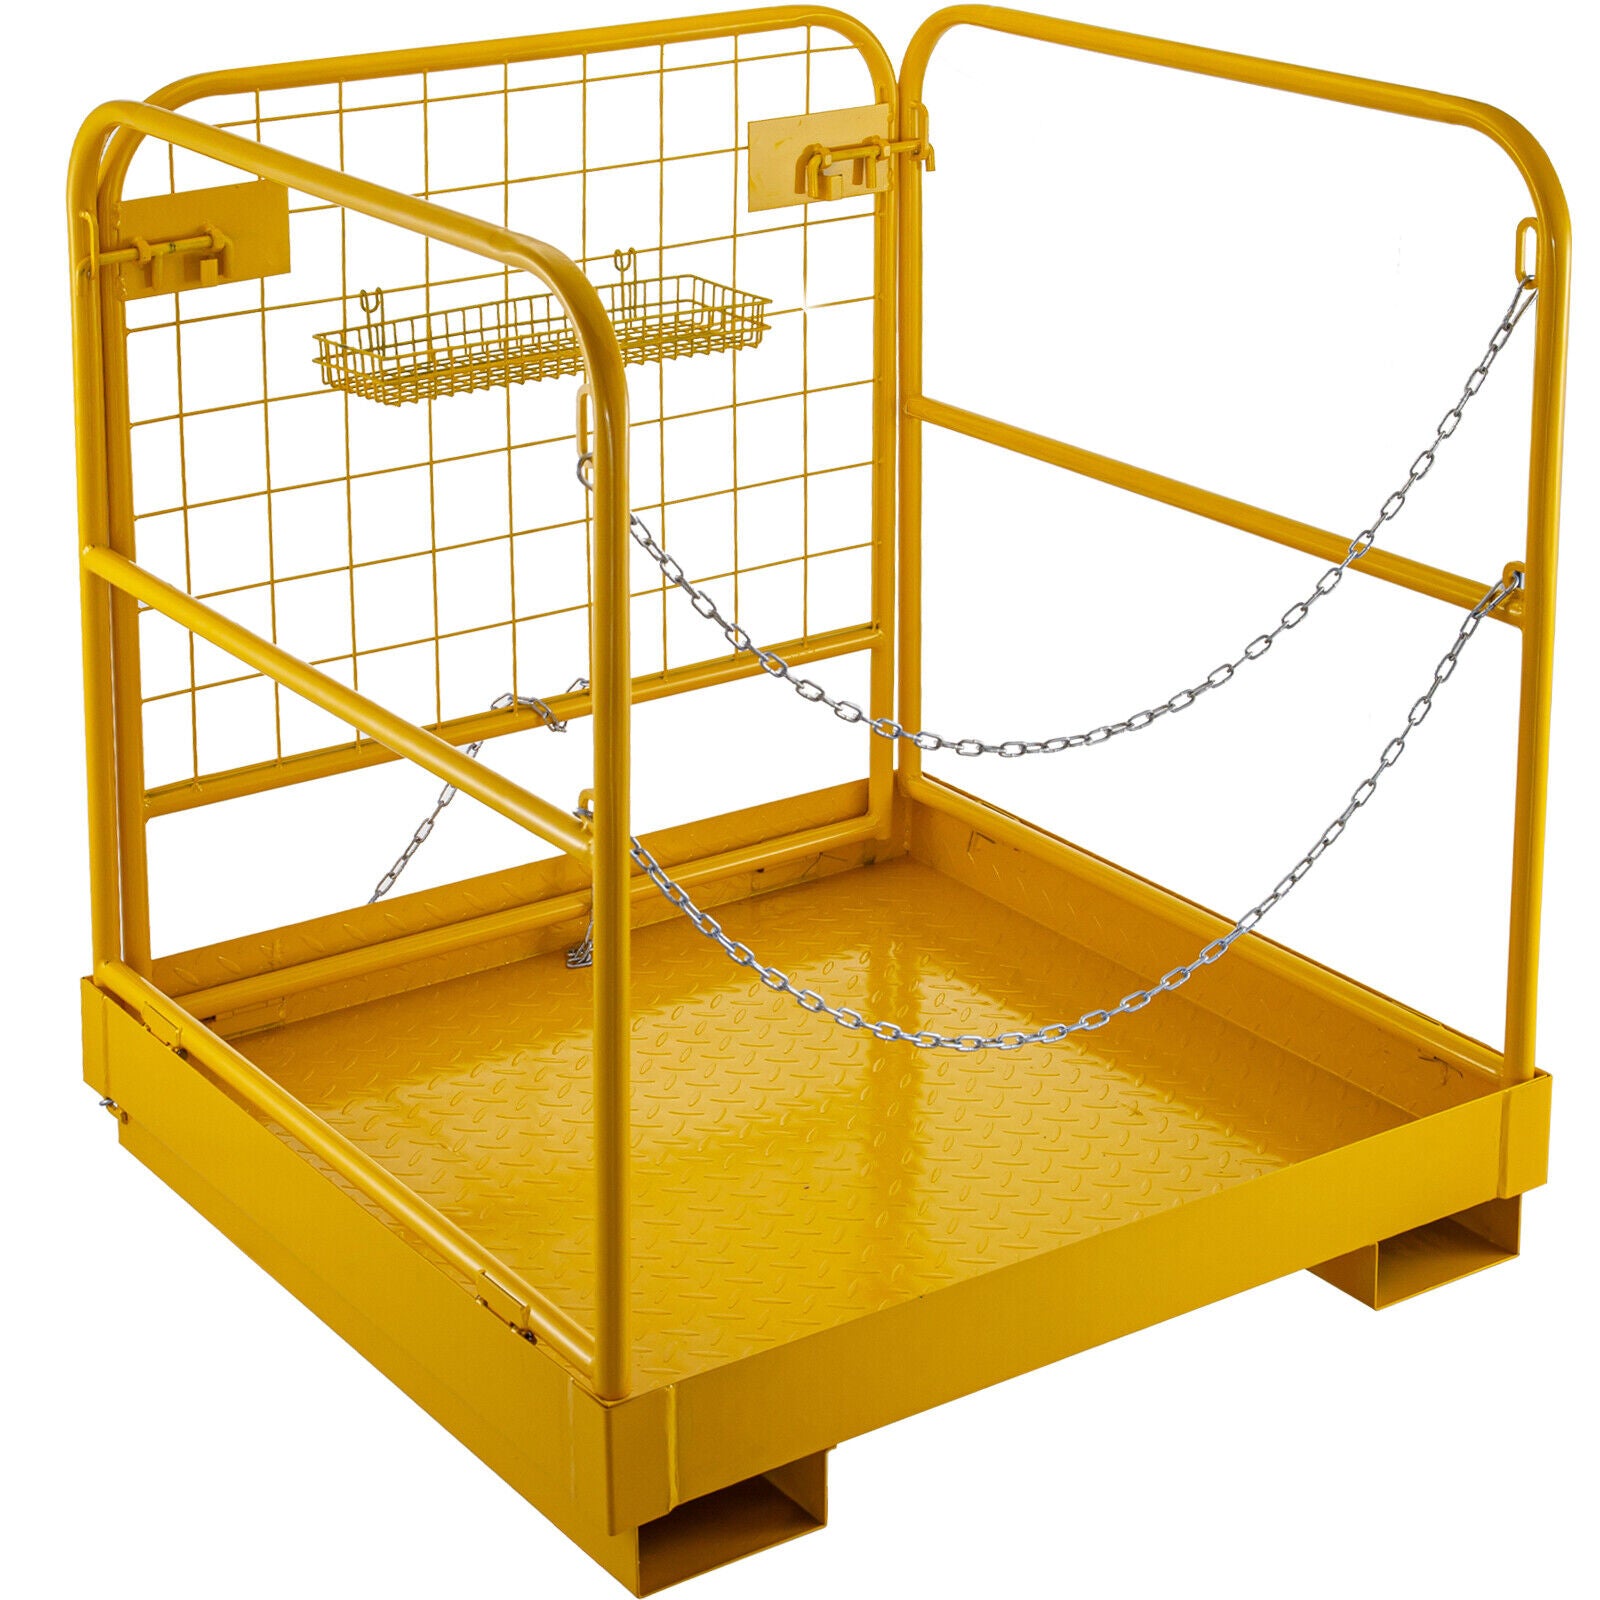 91x91cm Forklift Safety Cage Work Platform Lift